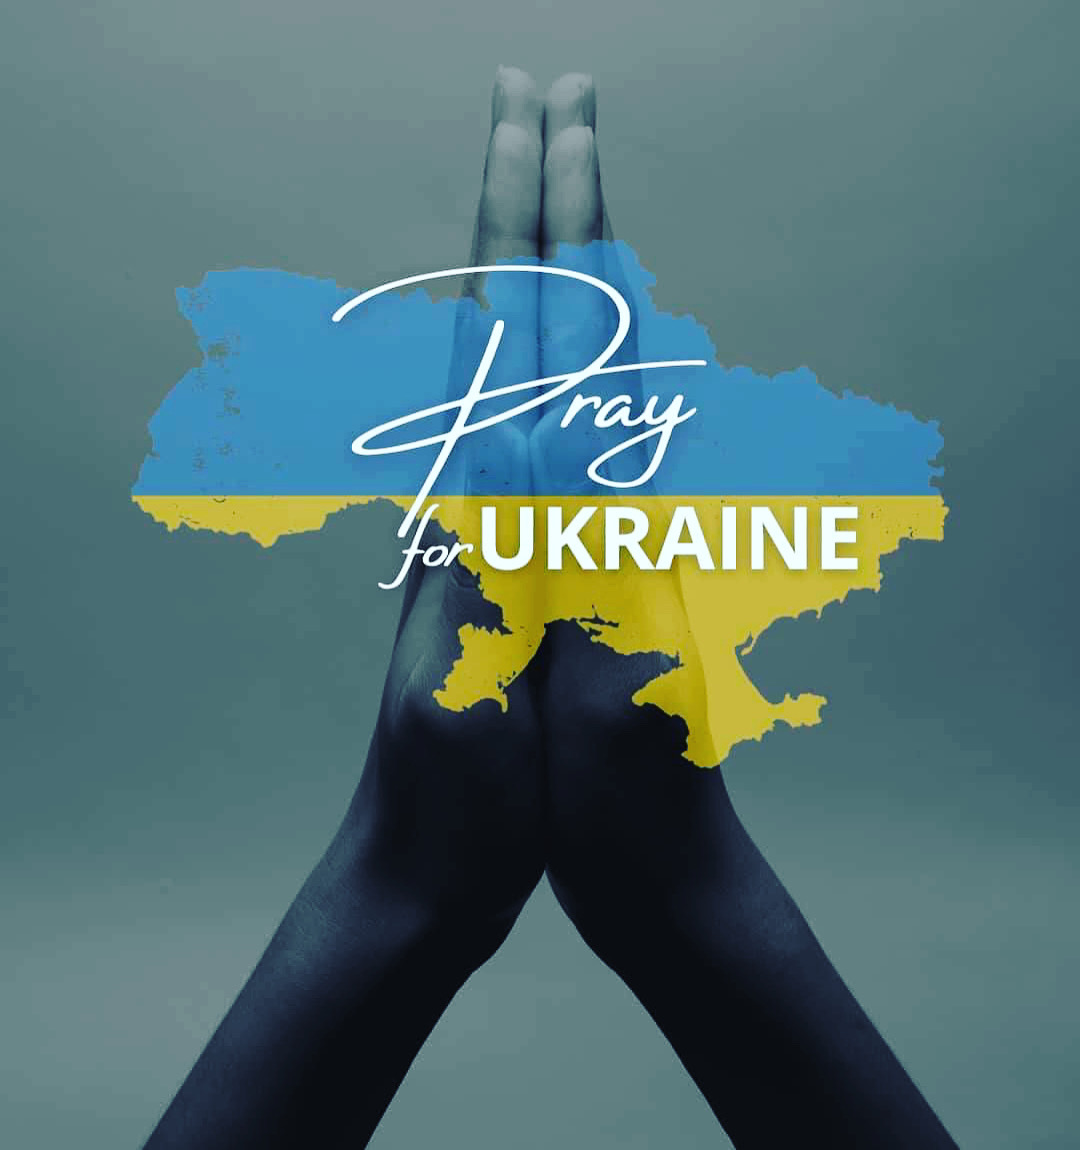 Oración por Ucrania